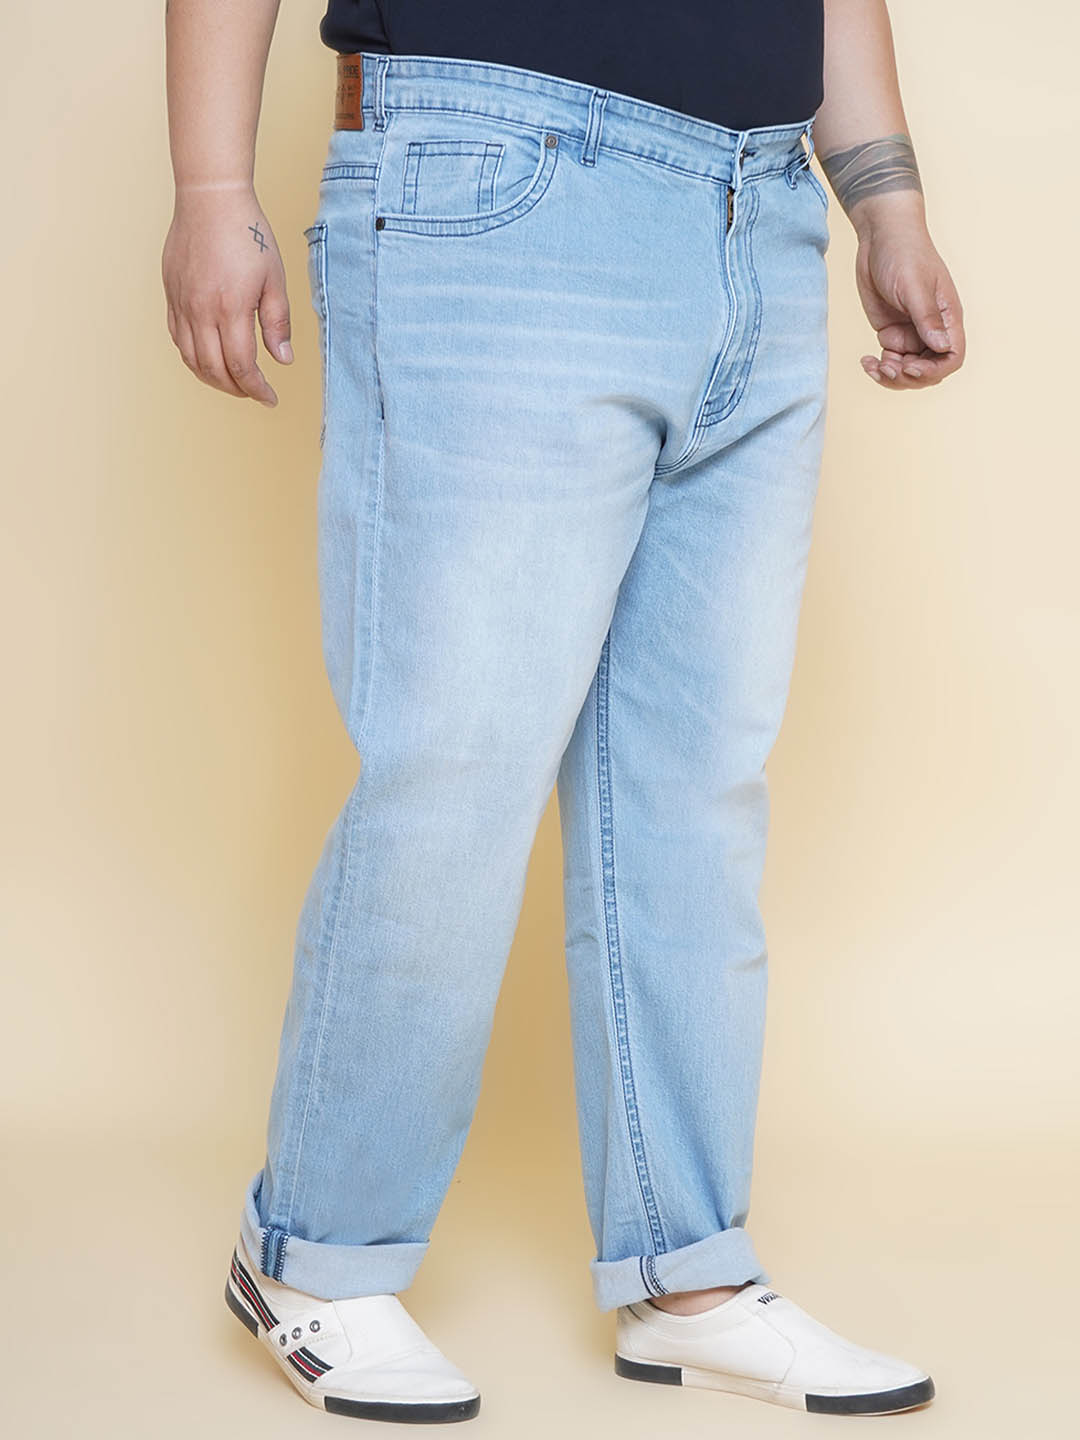 bottomwear/jeans/JPJ12361/jpj12361-3.jpg